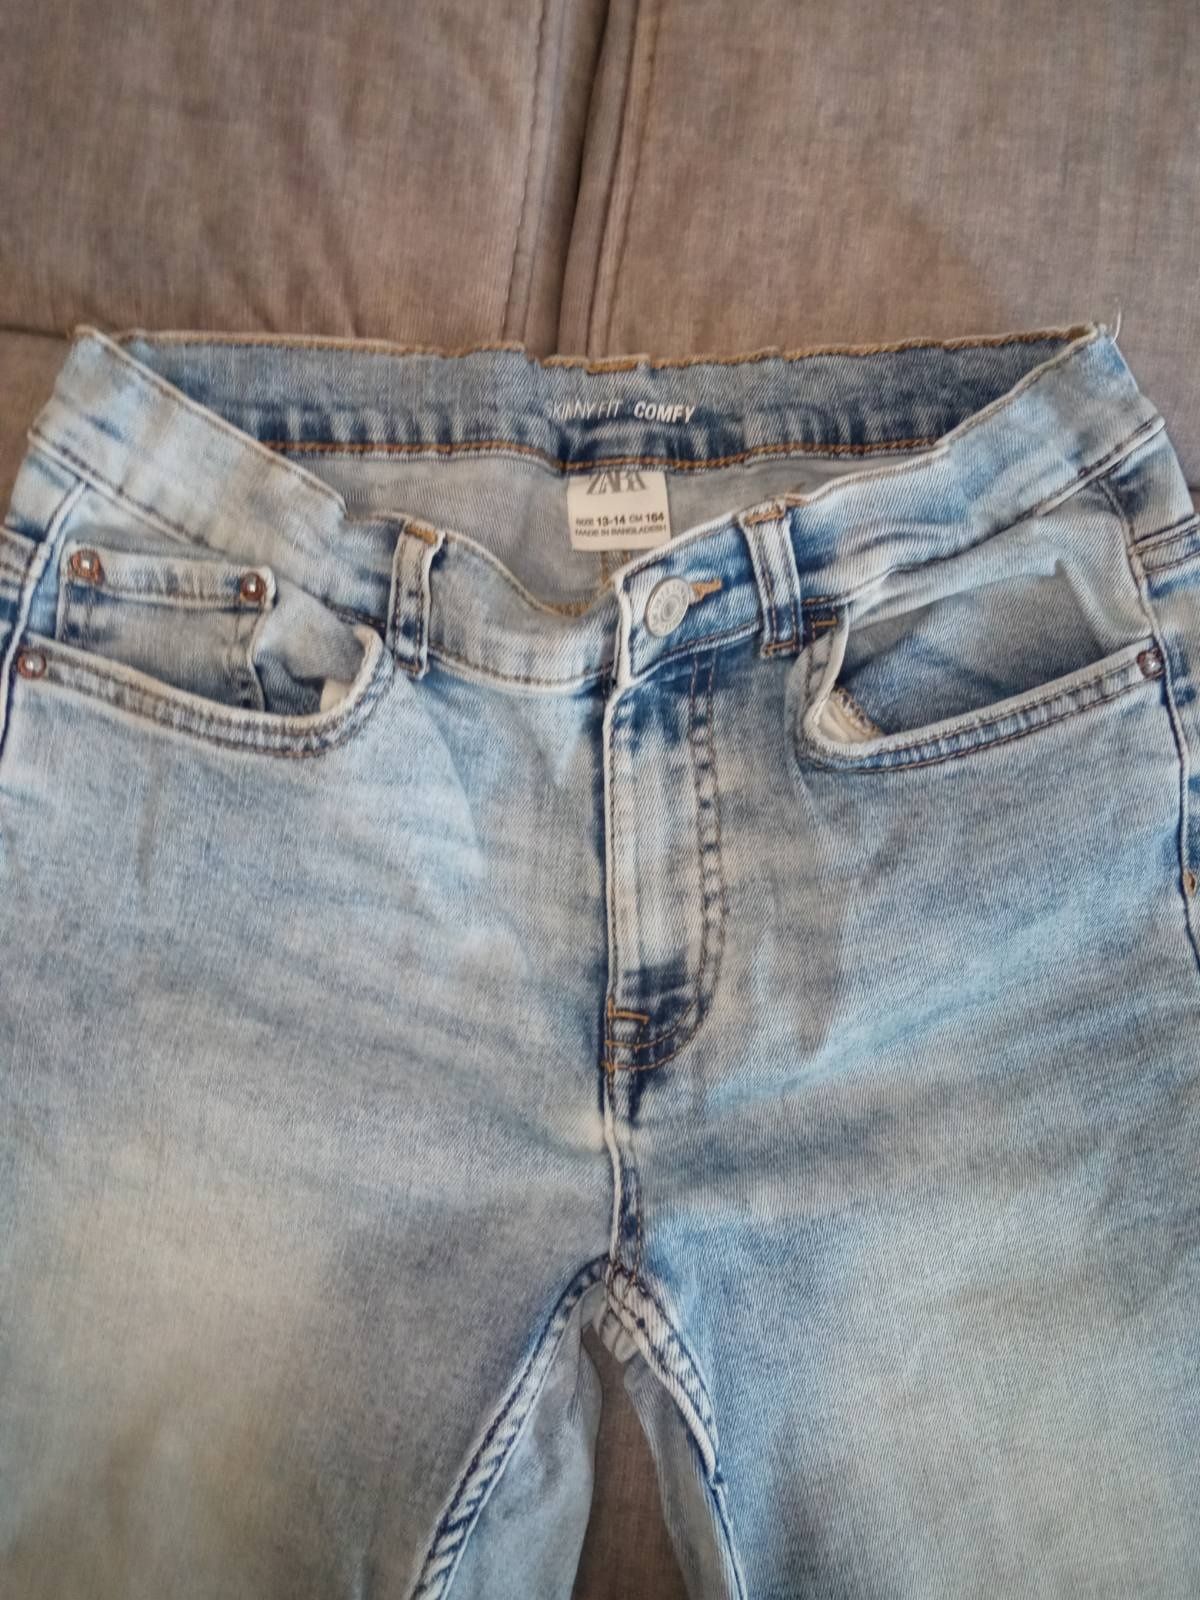 Продам джинсы, спортивные штаны на мальчика 12-14 лет